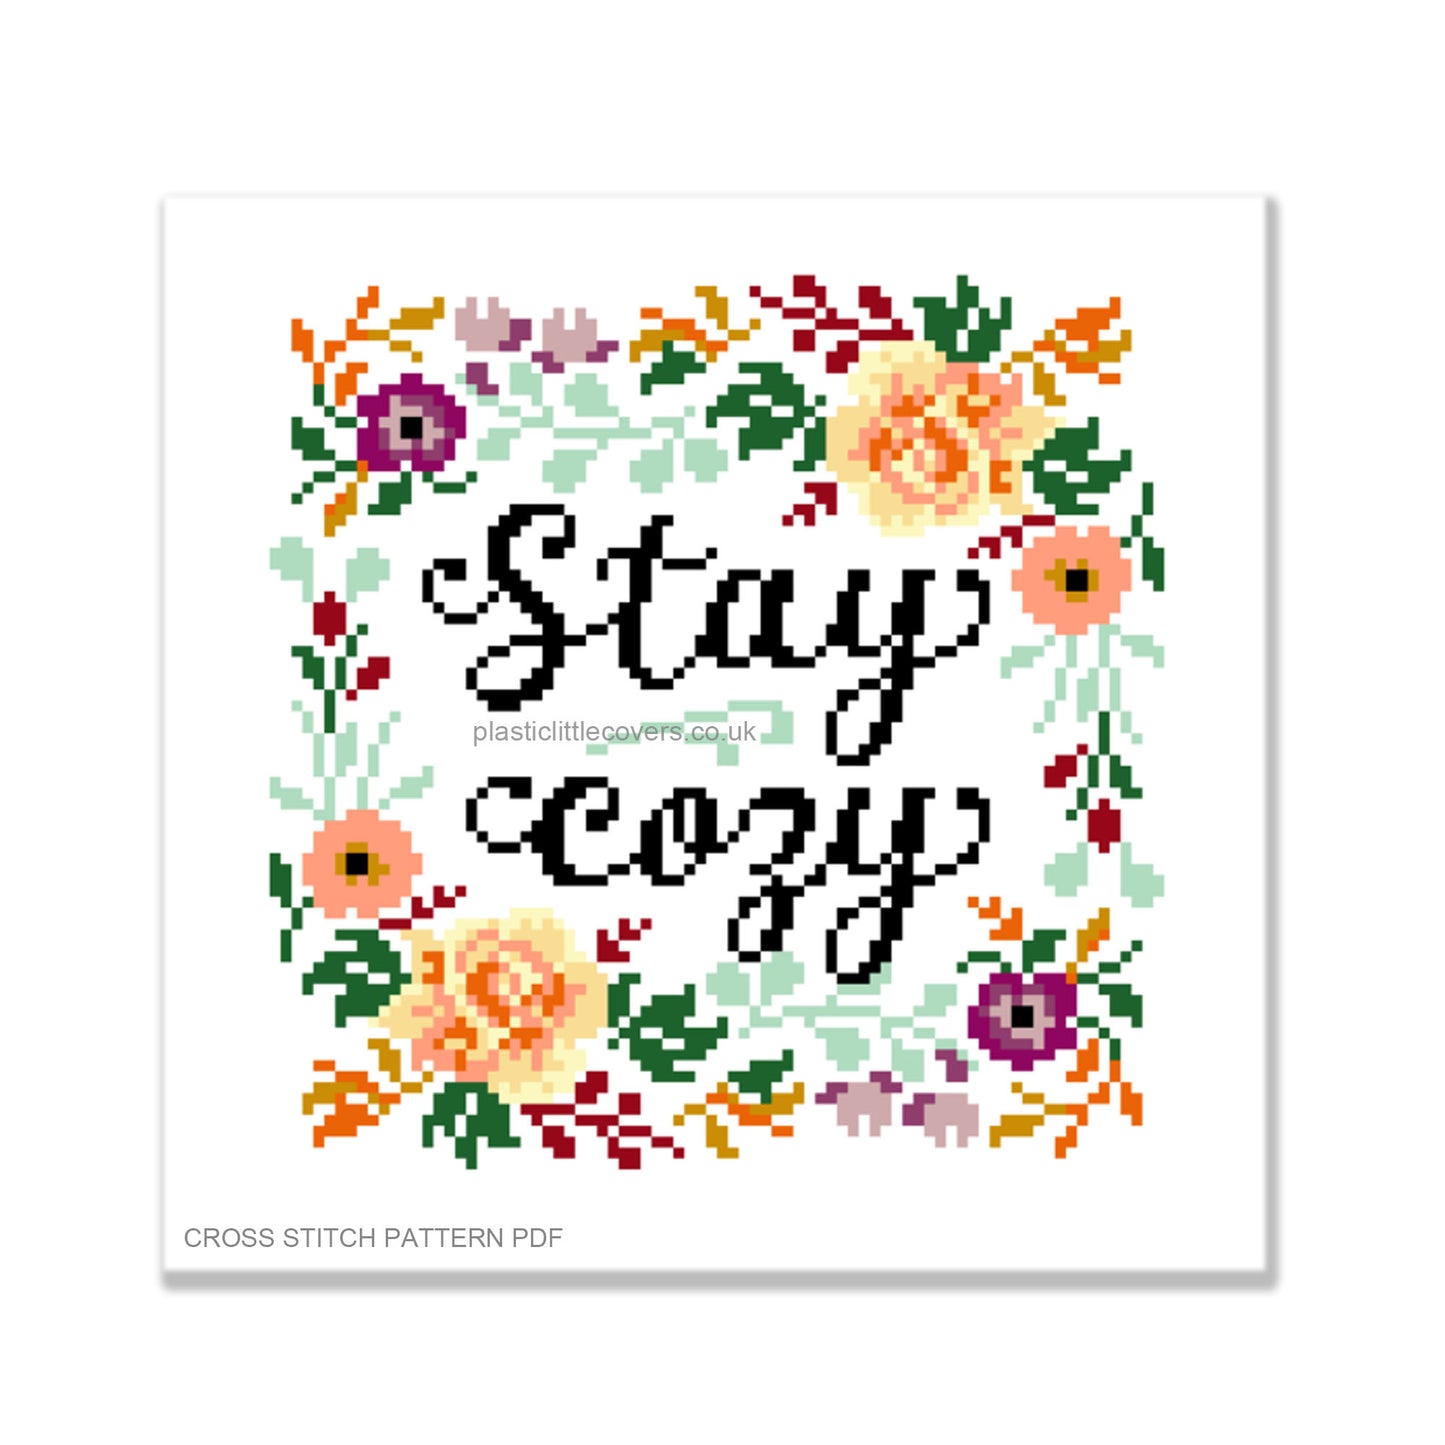 Stay Cosy - Cross Stitch Pattern PDF.